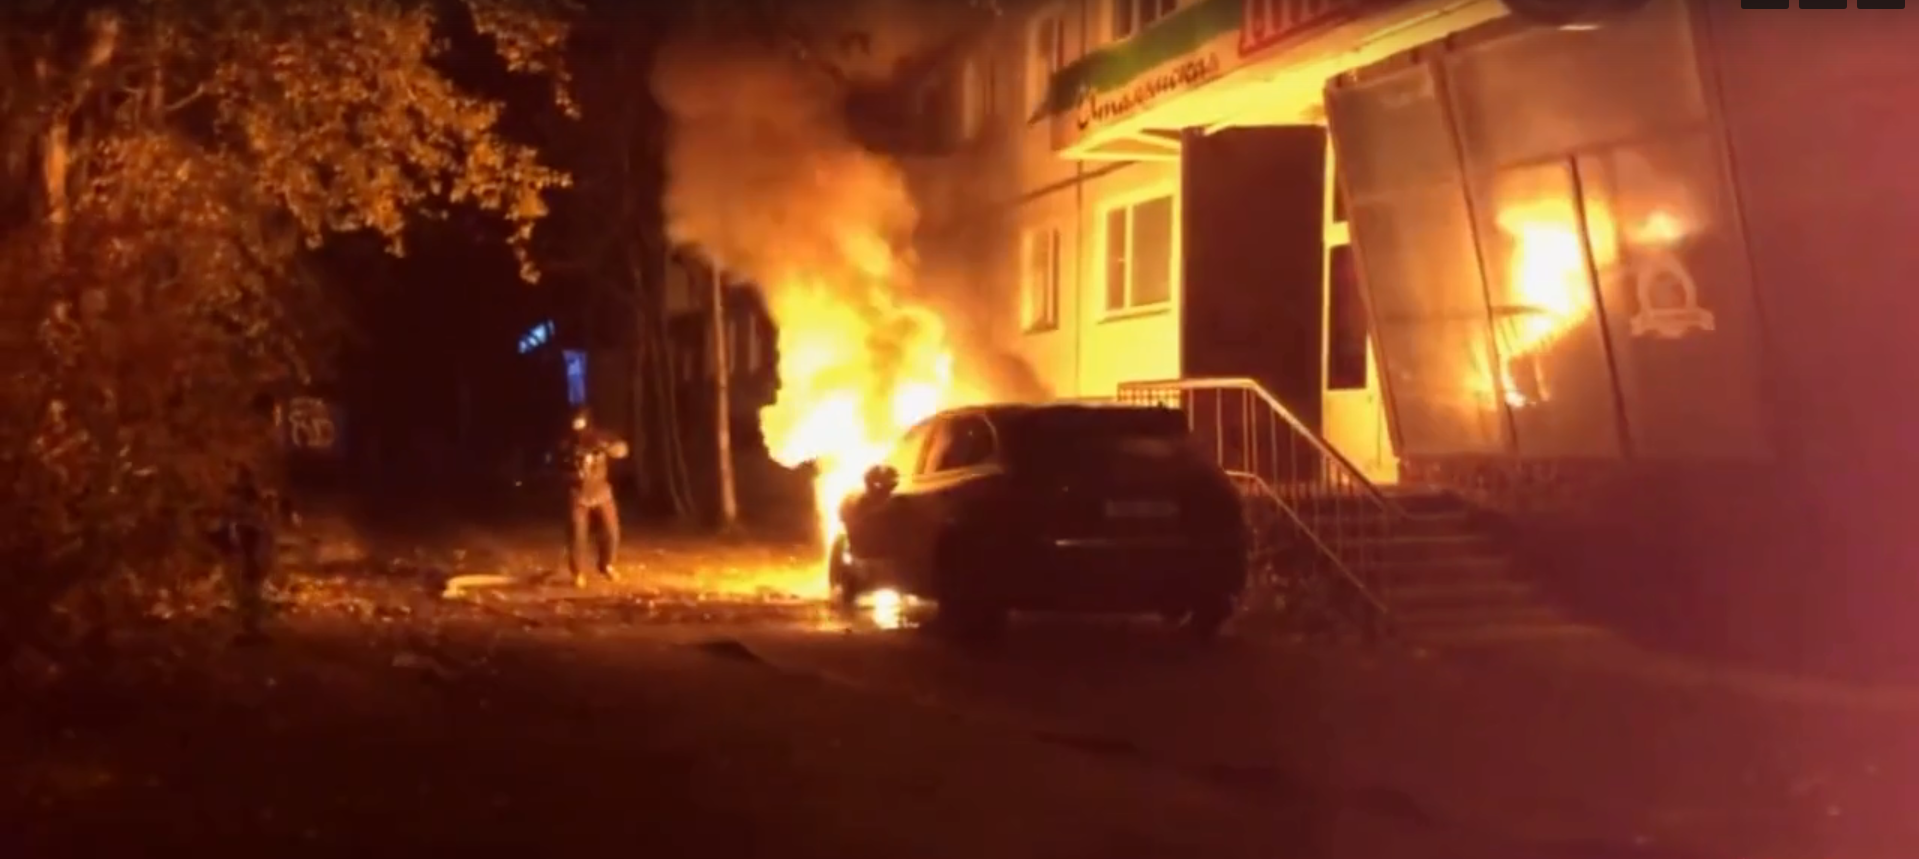 Три иномарки за ночь: по Северодвинску и Тойнокурью прошла волна автомобильных пожаров